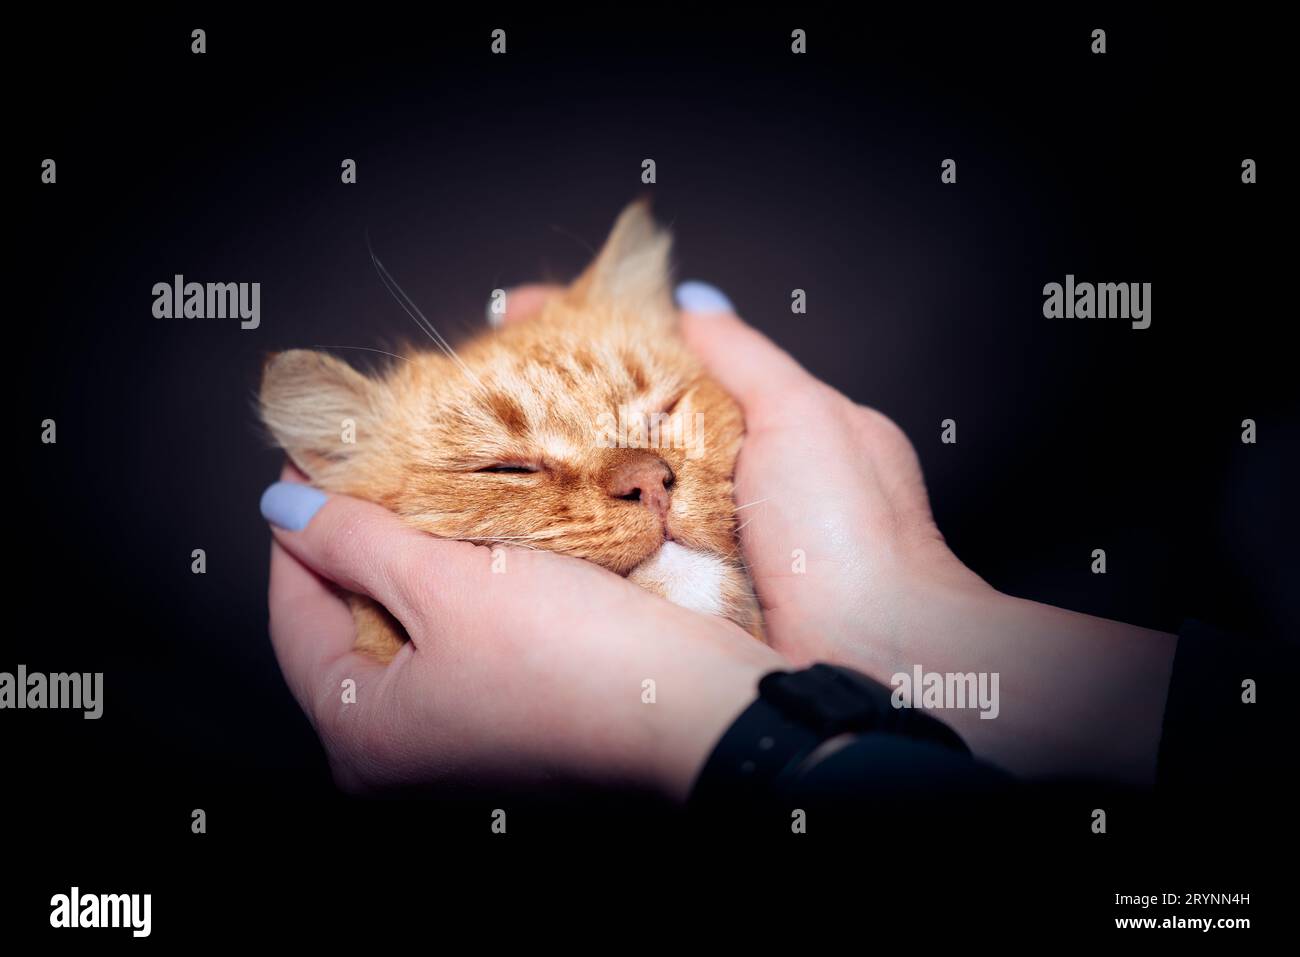 Museruola di un gatto mongrel rosso in mani femminili con una manicure blu su sfondo scuro Foto Stock